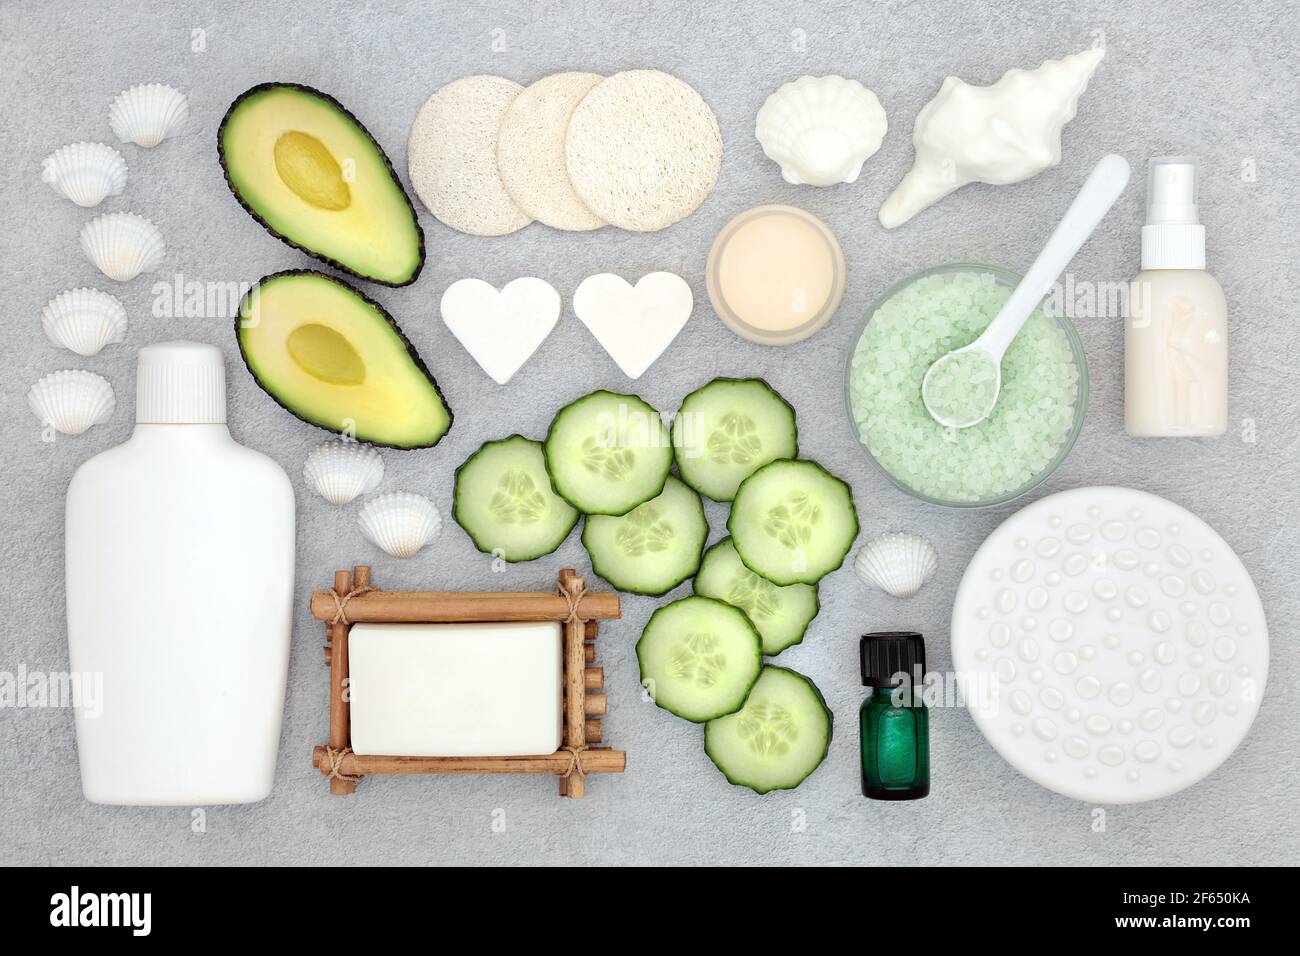 Natürliche Bio-Avocado & Gurken Beauty-Behandlungsprodukte für die Hautpflege mit veganen, grausamfreien Zutaten. Flach liegend auf meliertem grauen Hintergrund. Stockfoto